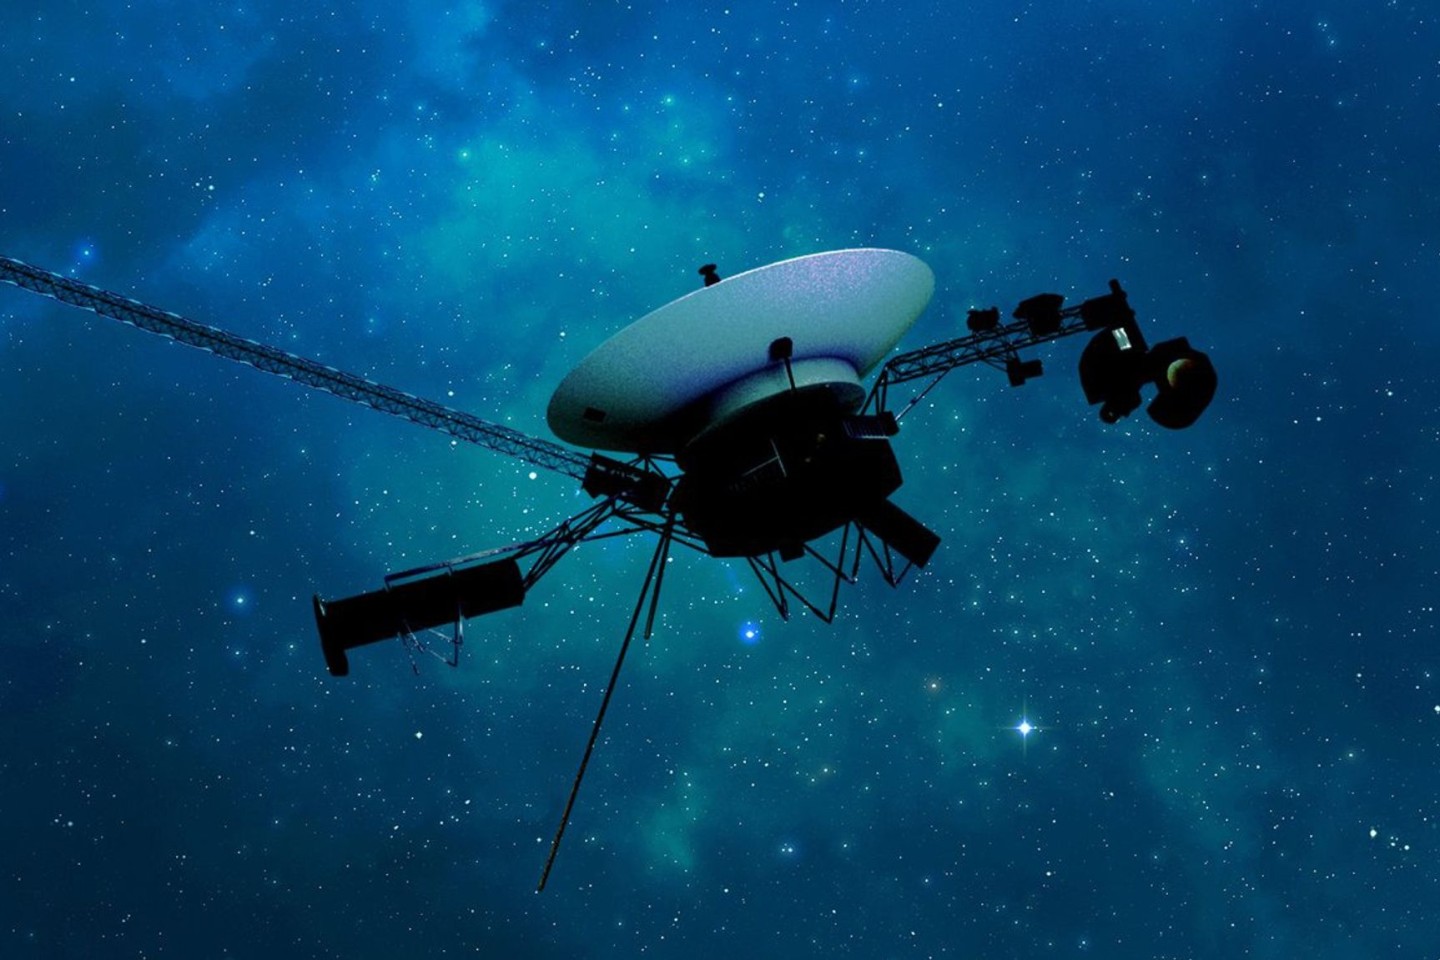 Eine künstlerische Darstellung der Raumsonde Voyager 1 der NASA auf ihrer Reise durch den interstellaren Raum bzw. den Raum zwischen den Sternen.